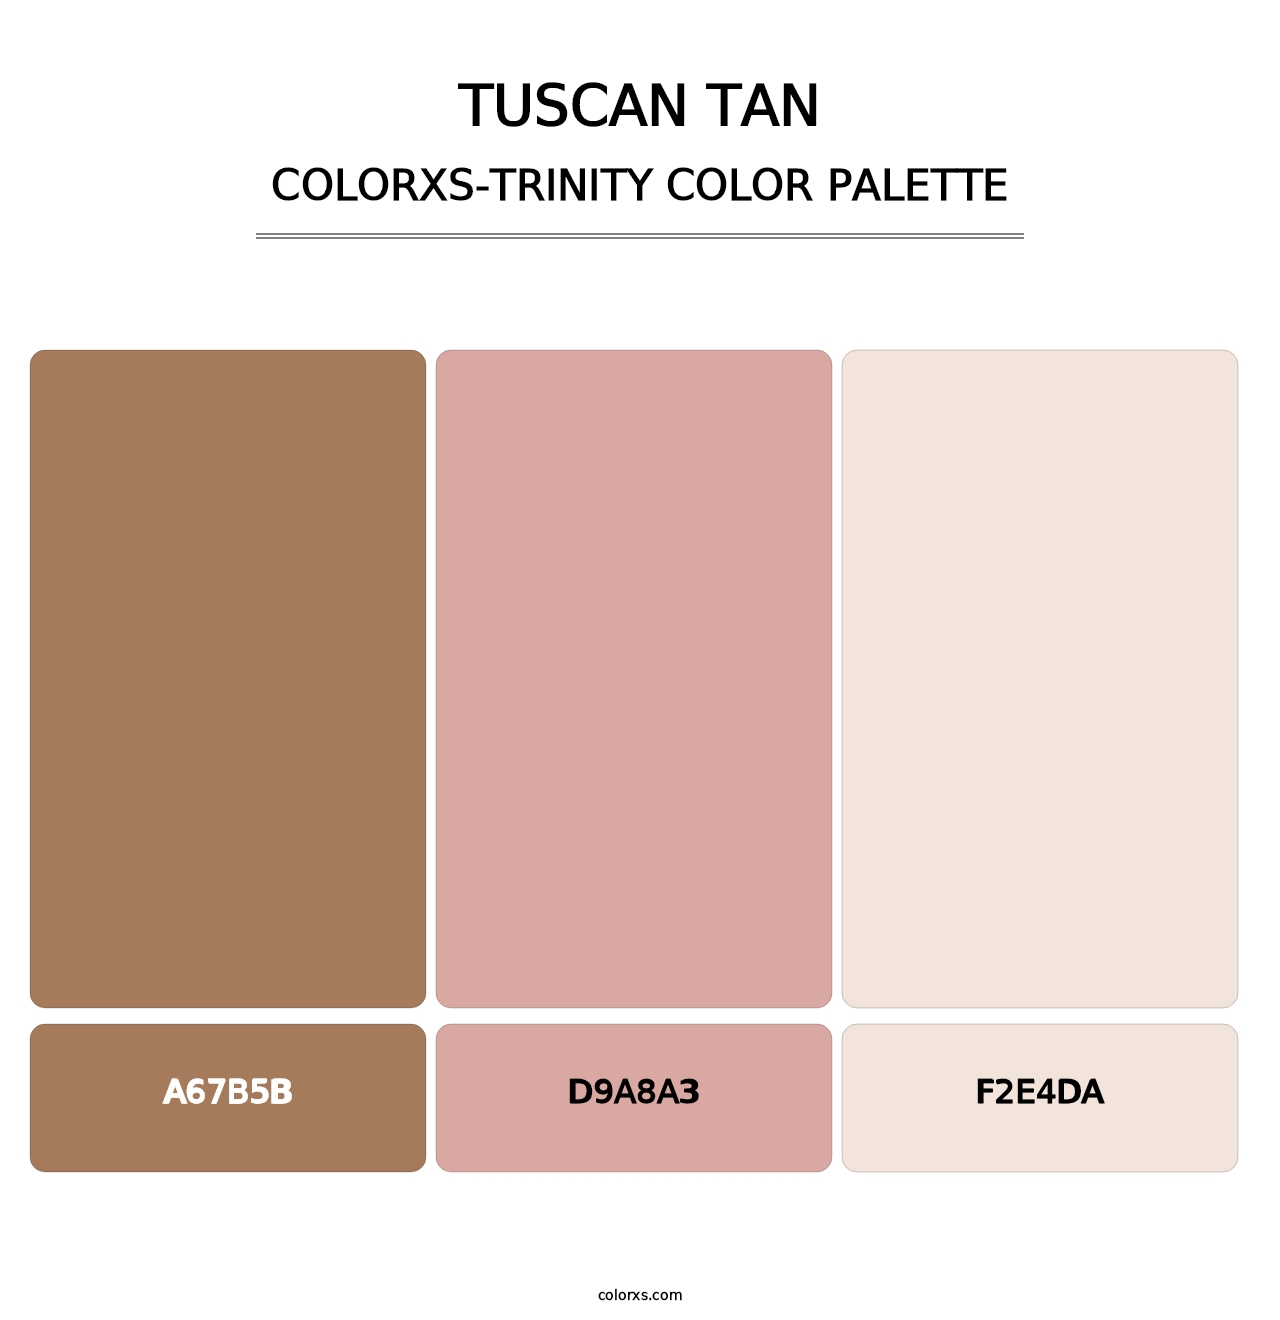 Tuscan Tan - Colorxs Trinity Palette